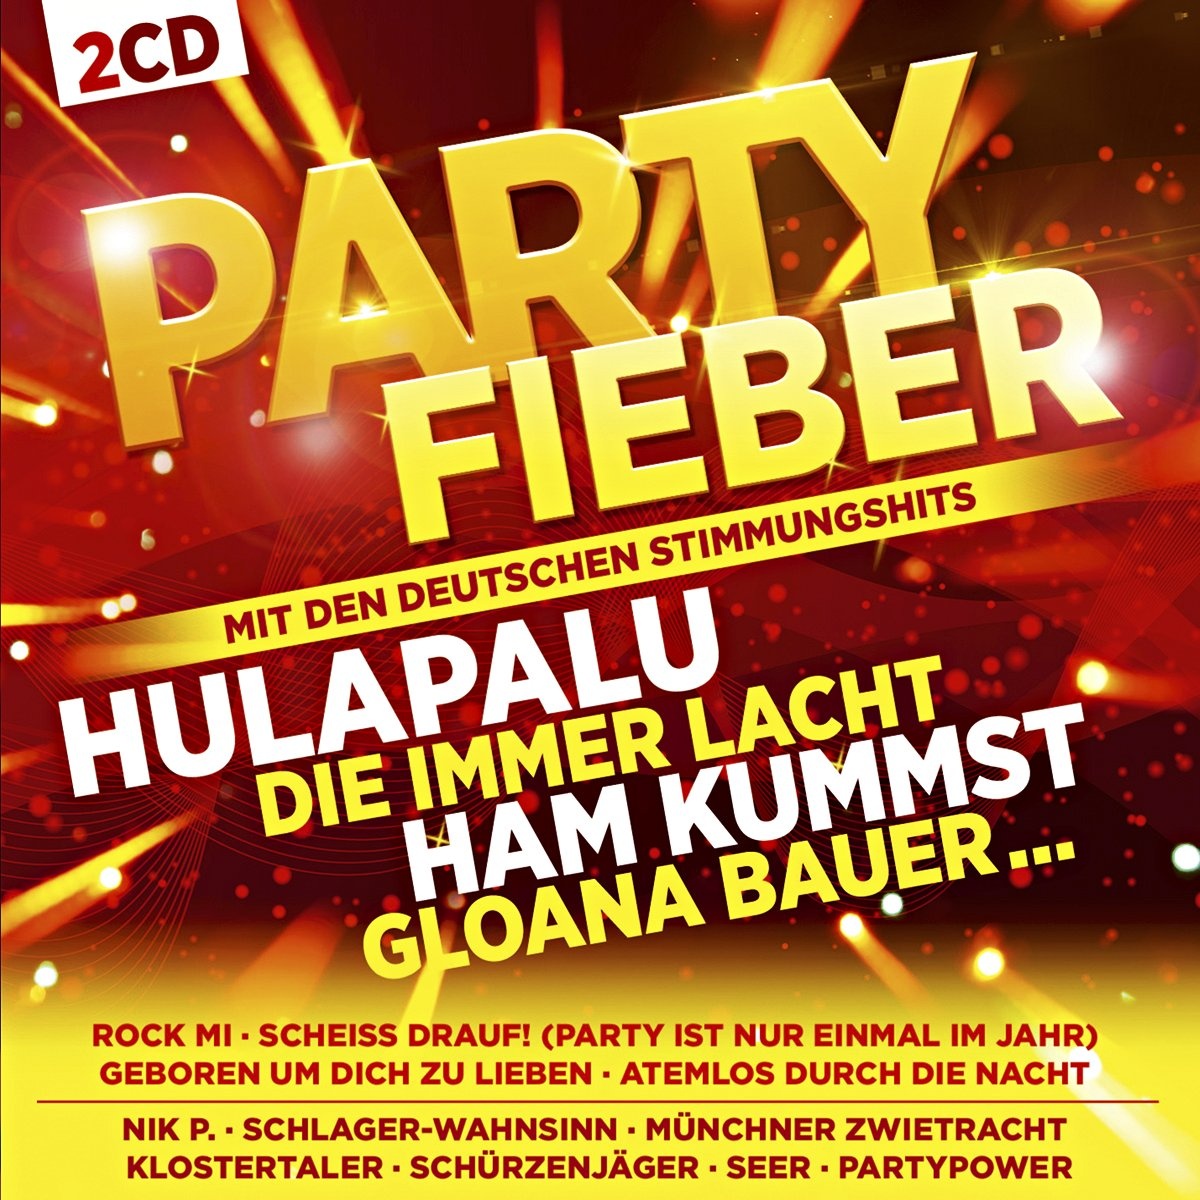 Partyfieber-Inkl.Hulapalu Die Immer Lacht - Various. (CD)